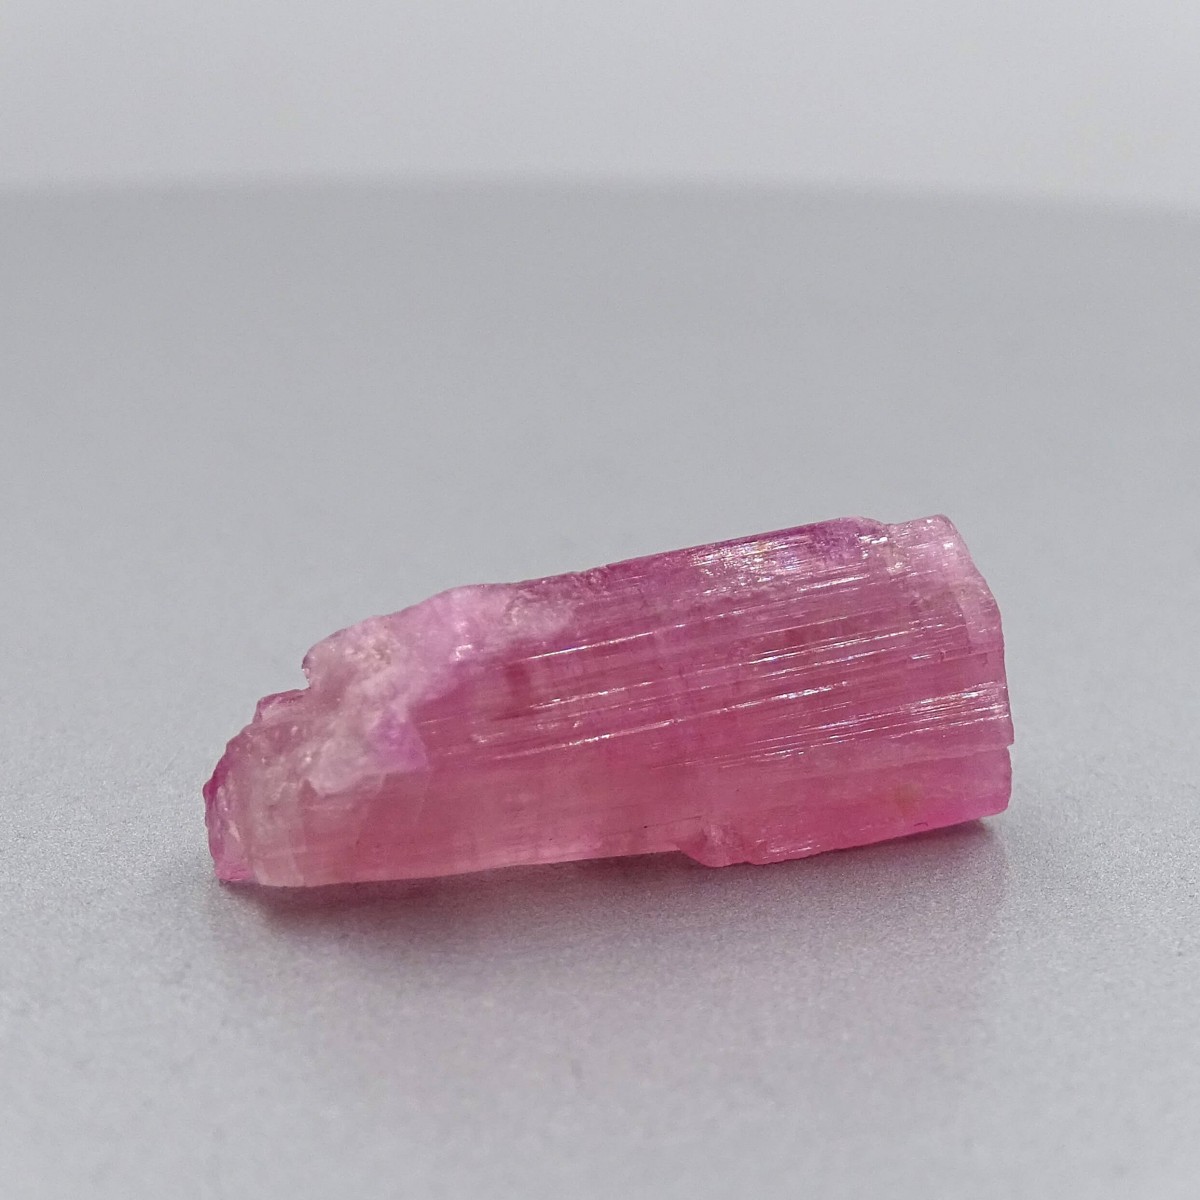 Turmalín růžový přírodní krystal 6,5g, Afganistán